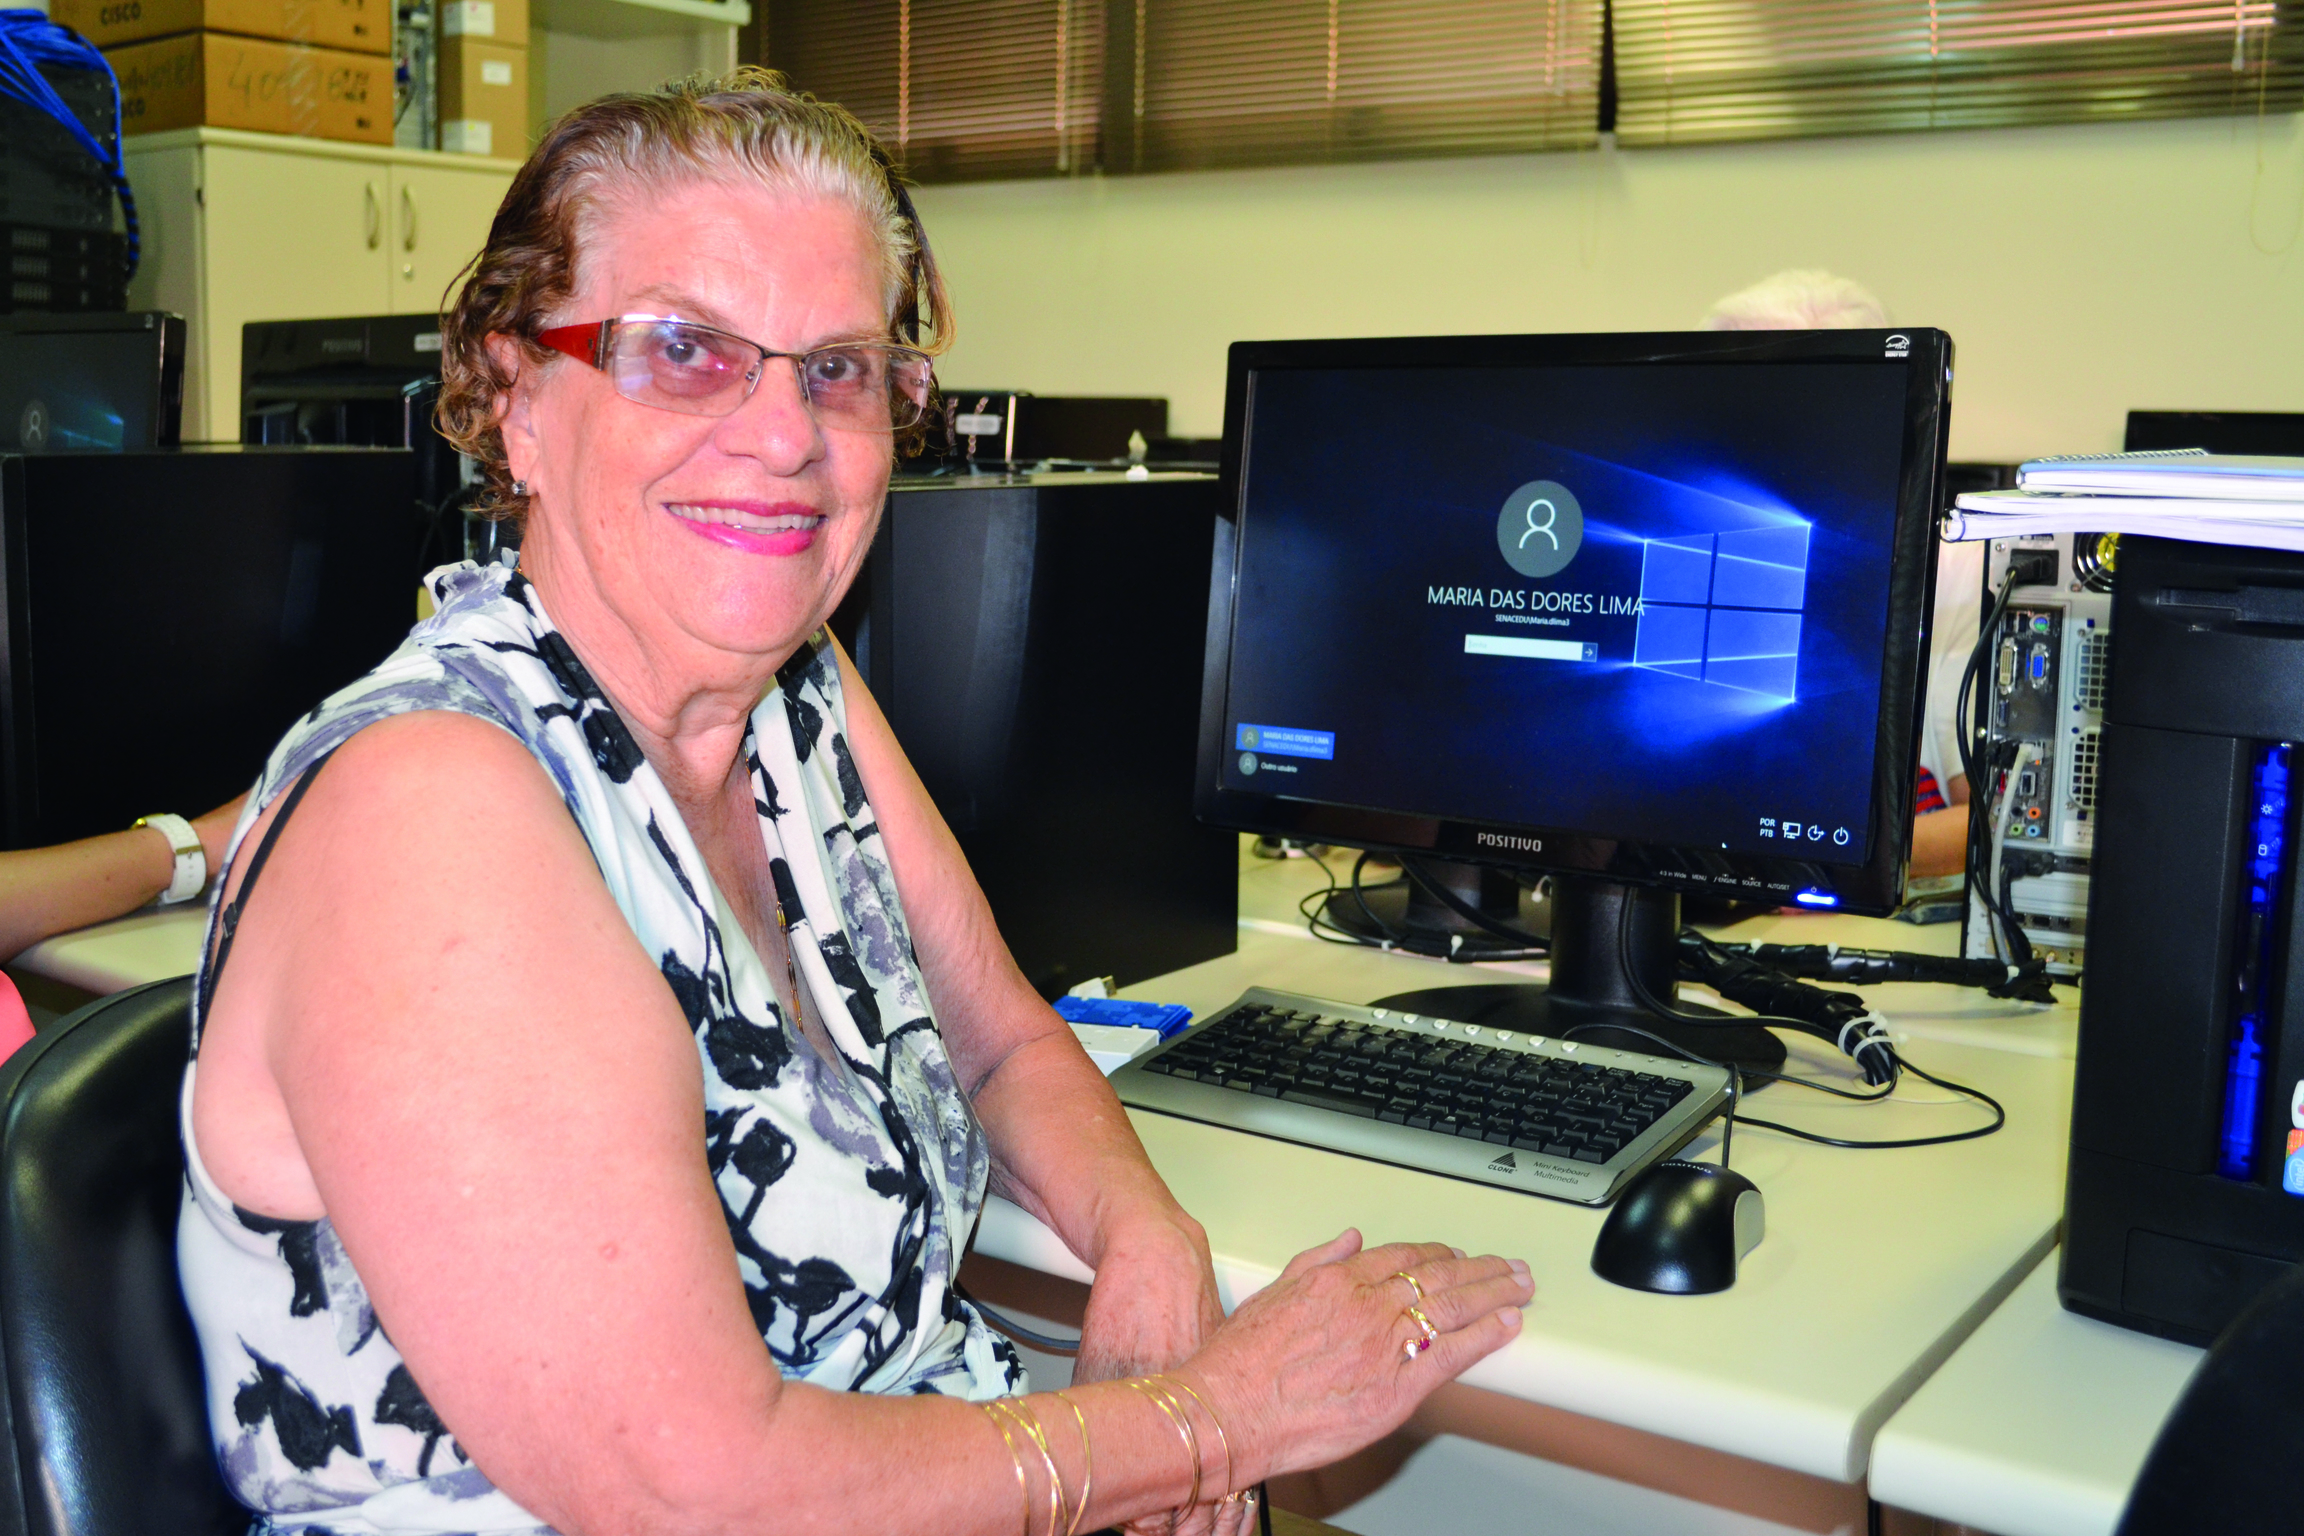 Dona de uma loja virtual, Maria aproveitou o curso de informática para fomentar o negócio